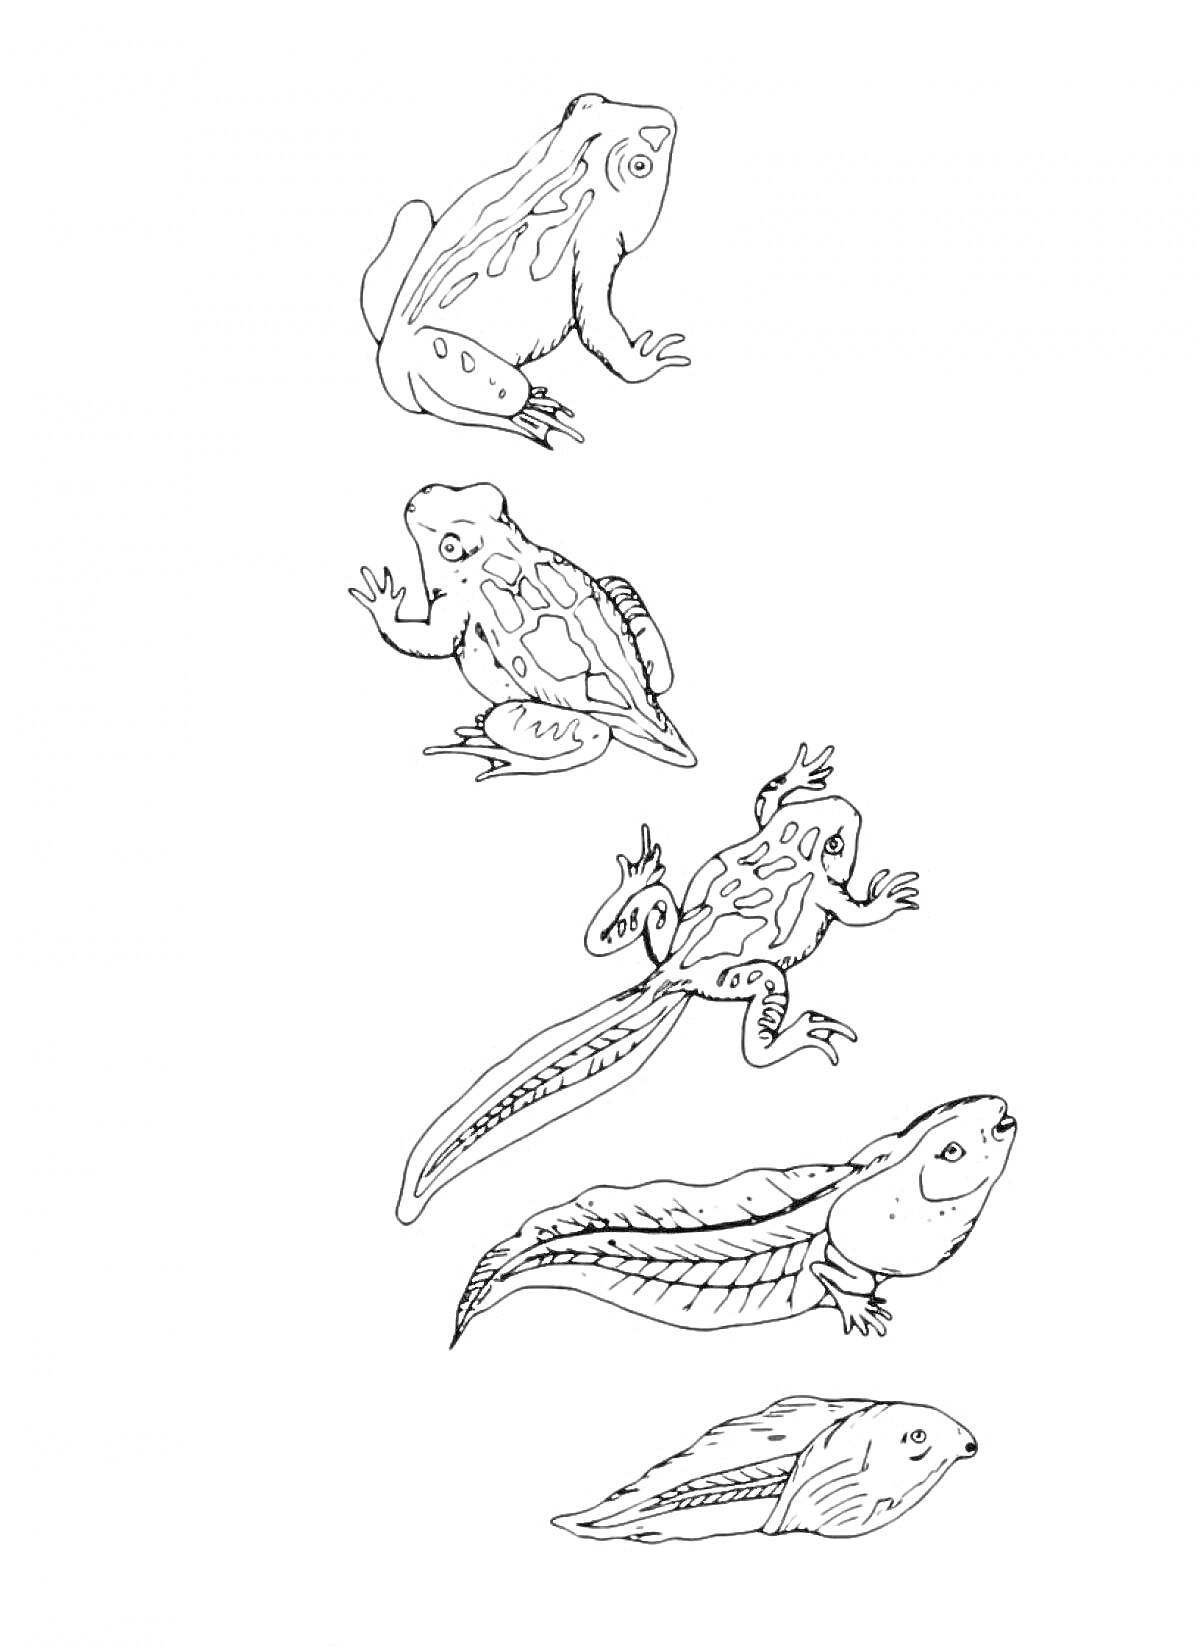 Эволюция лягушки: головастик, головастик с хвостом, головастик с конечностями, лягушка с хвостом, взрослая лягушка